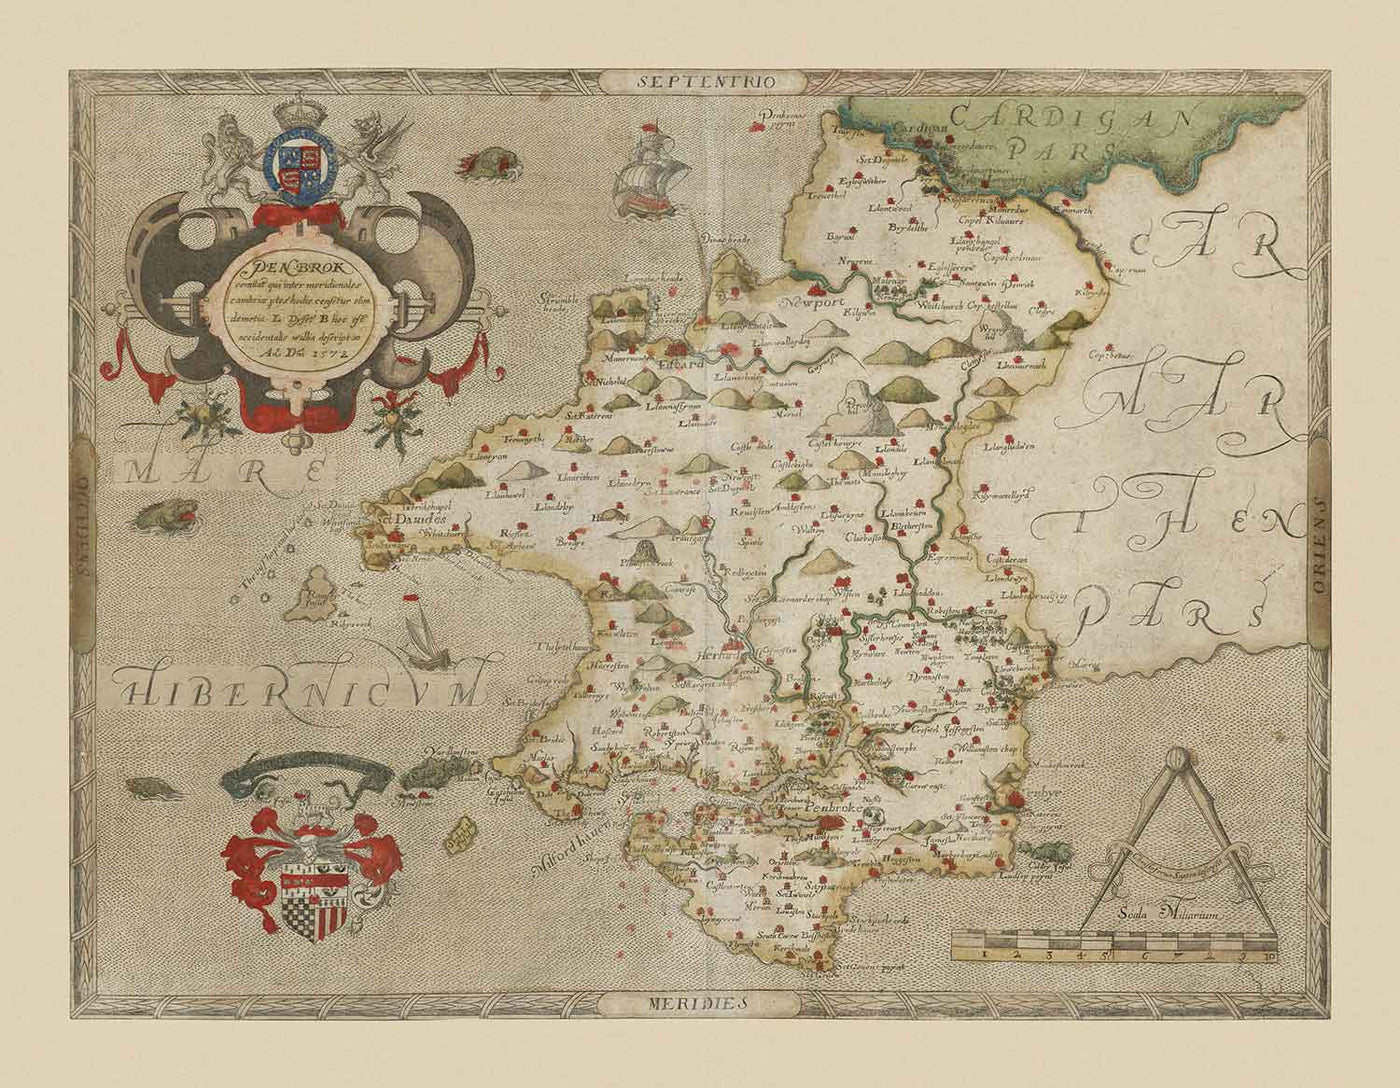 Alte Karte von Pembrokeshire, Wales im Jahr 1578 von Christopher Saxton - Pembroke, Newport, Cardigan, Fishguard, Haverfordwest